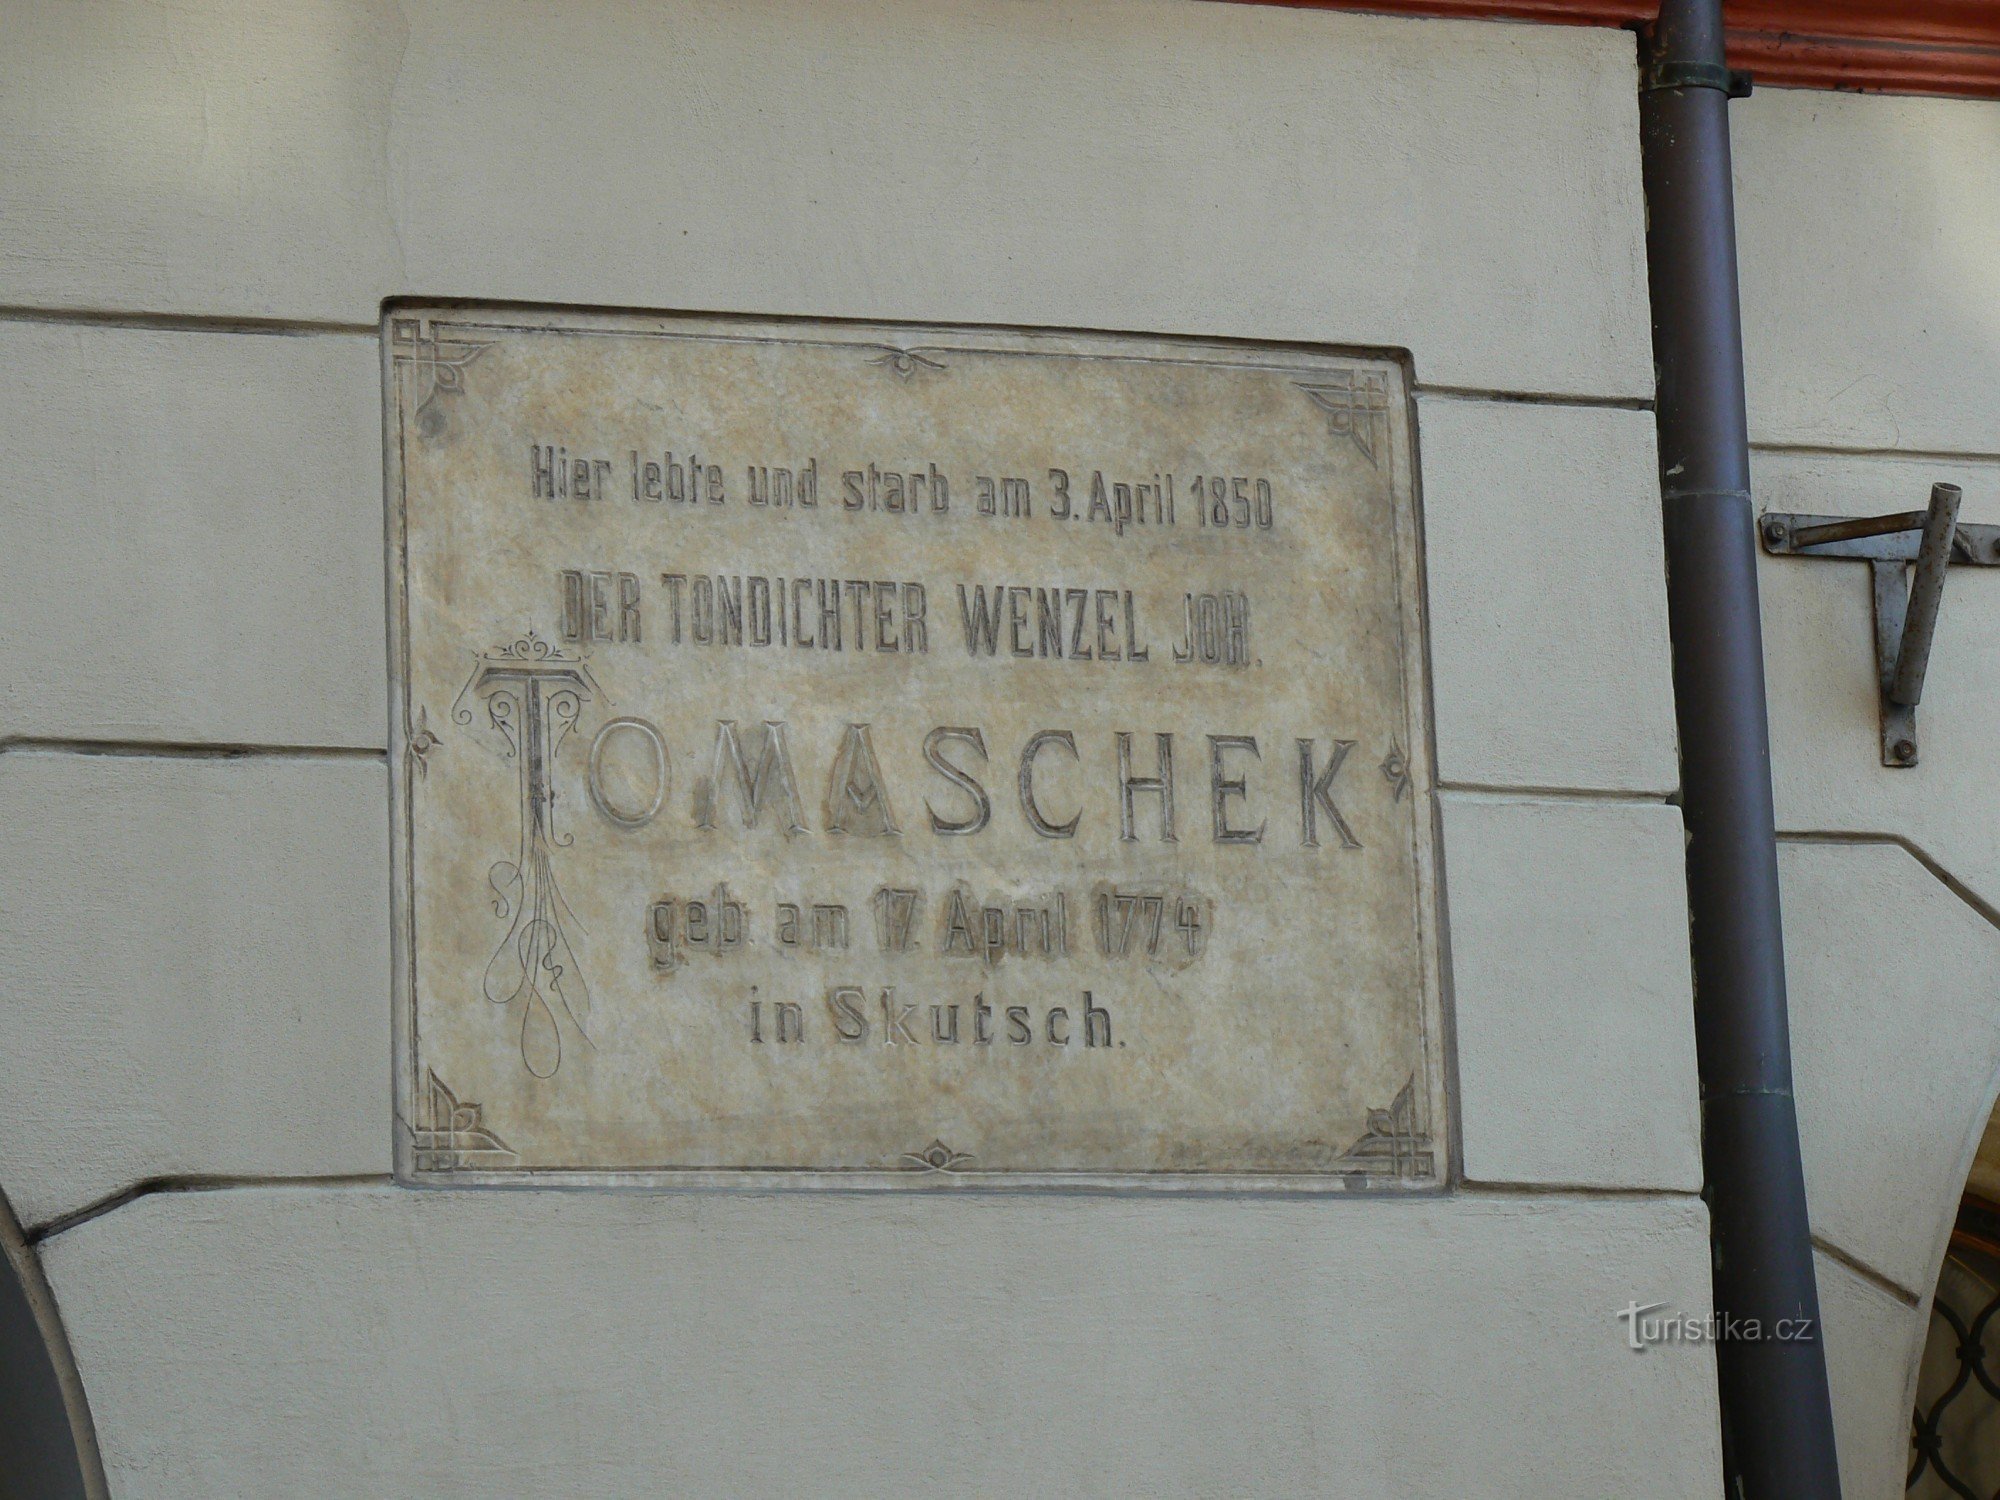 Placa comemorativa de VJTomášek - alemão